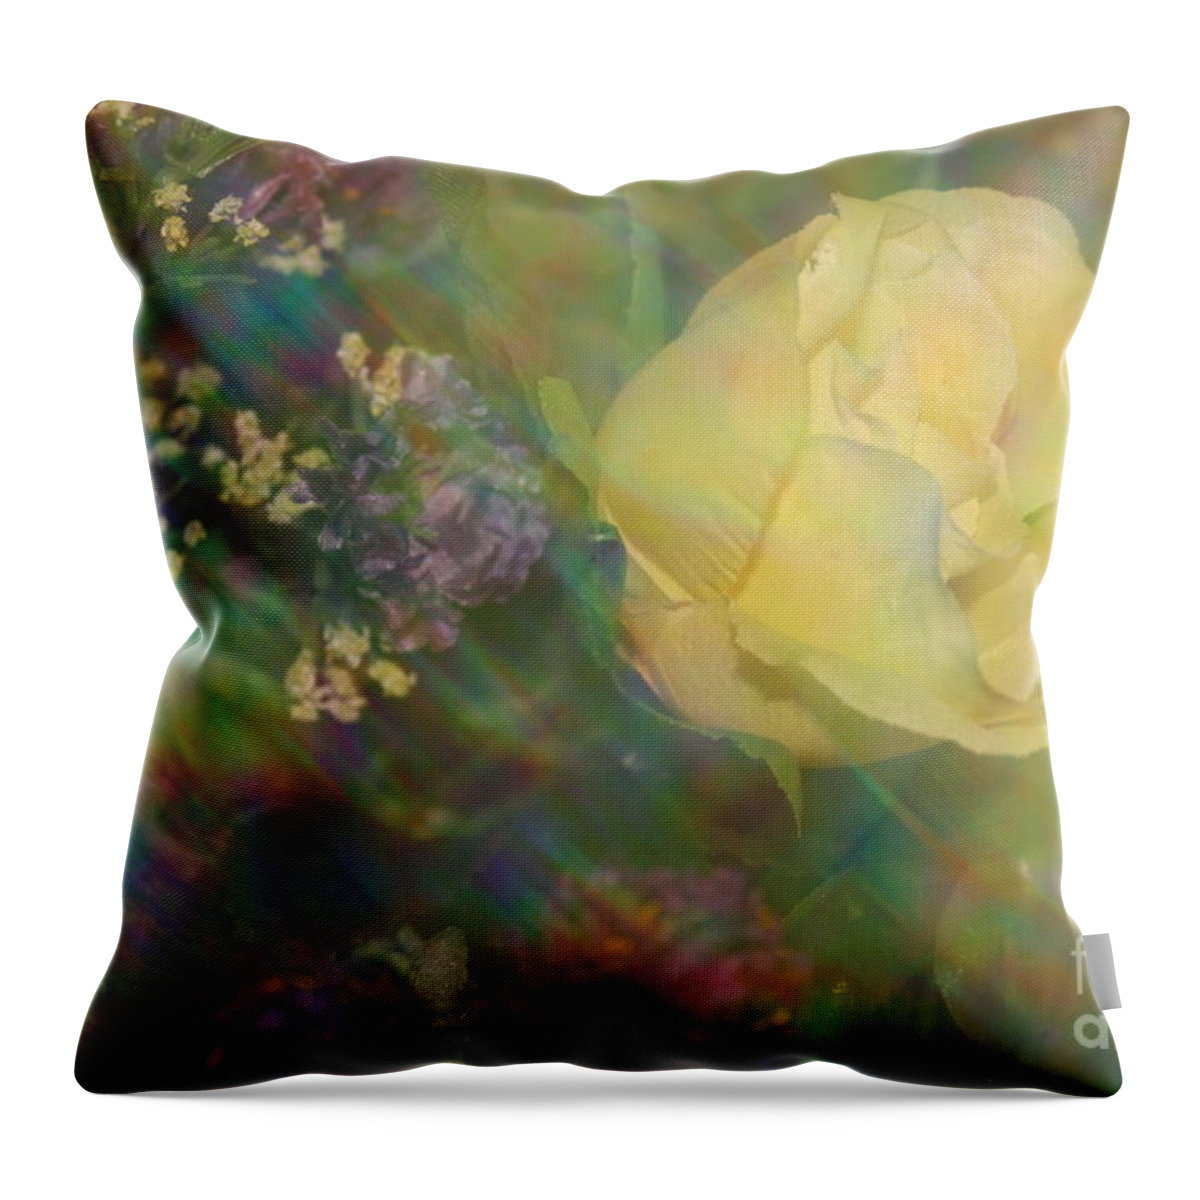 Flowers - Impressionistic Yellow Rose Throw Pillow featuring the photograph Impressionistic Yellow Rose by Dora Sofia Caputo